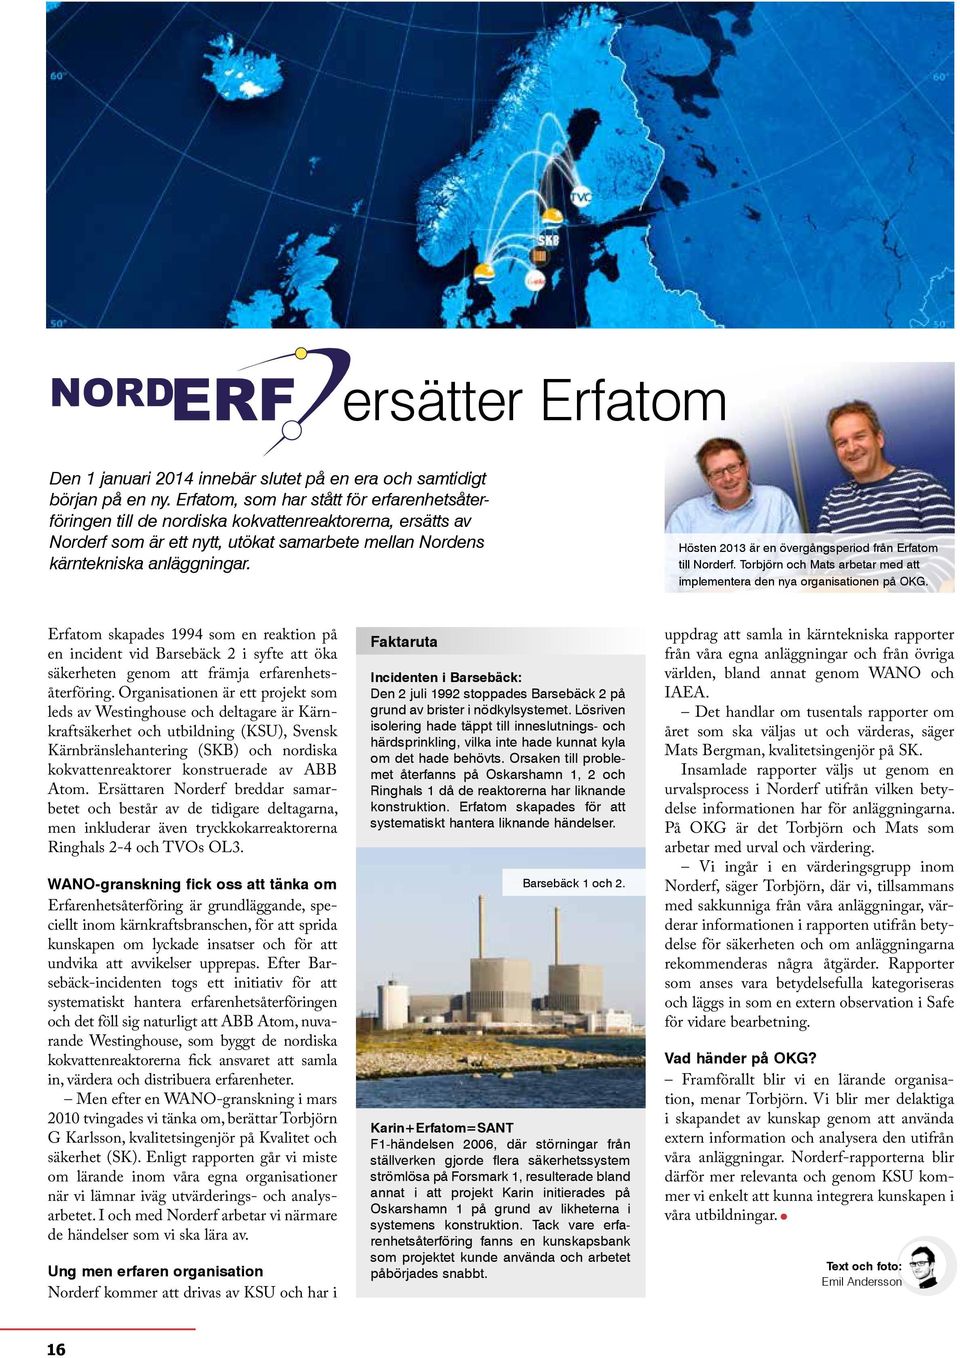 Hösten 2013 är en övergångsperiod från Erfatom till Norderf. Torbjörn och Mats arbetar med att implementera den nya organisationen på OKG.